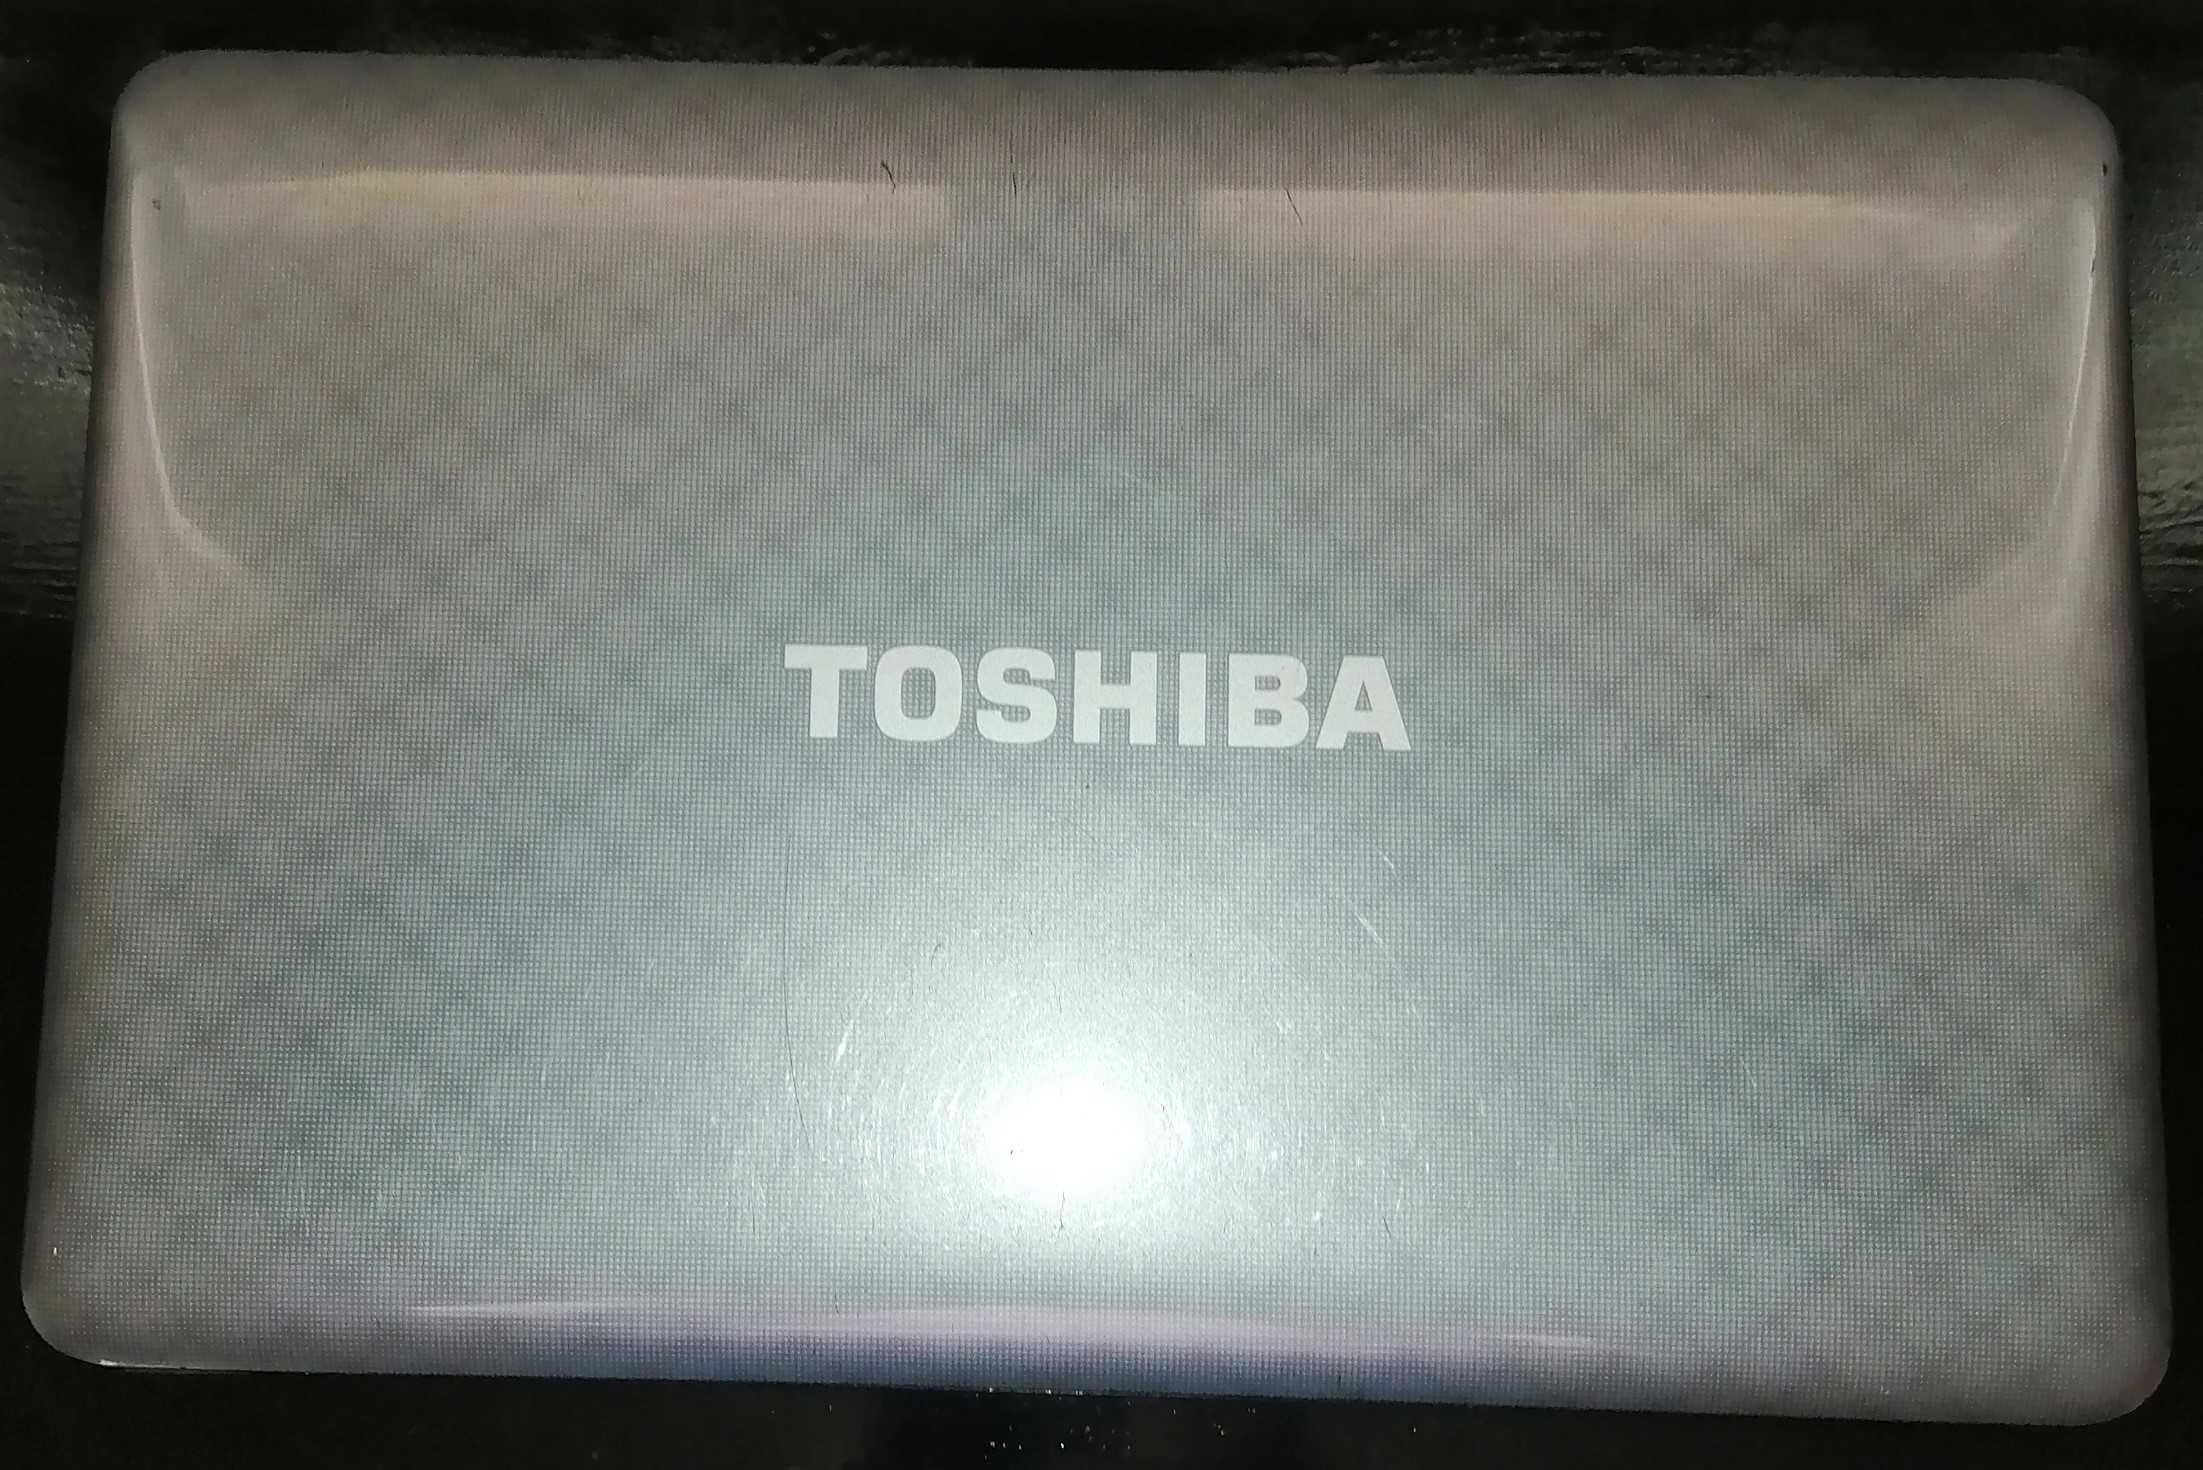 Portátil Toshiba i5